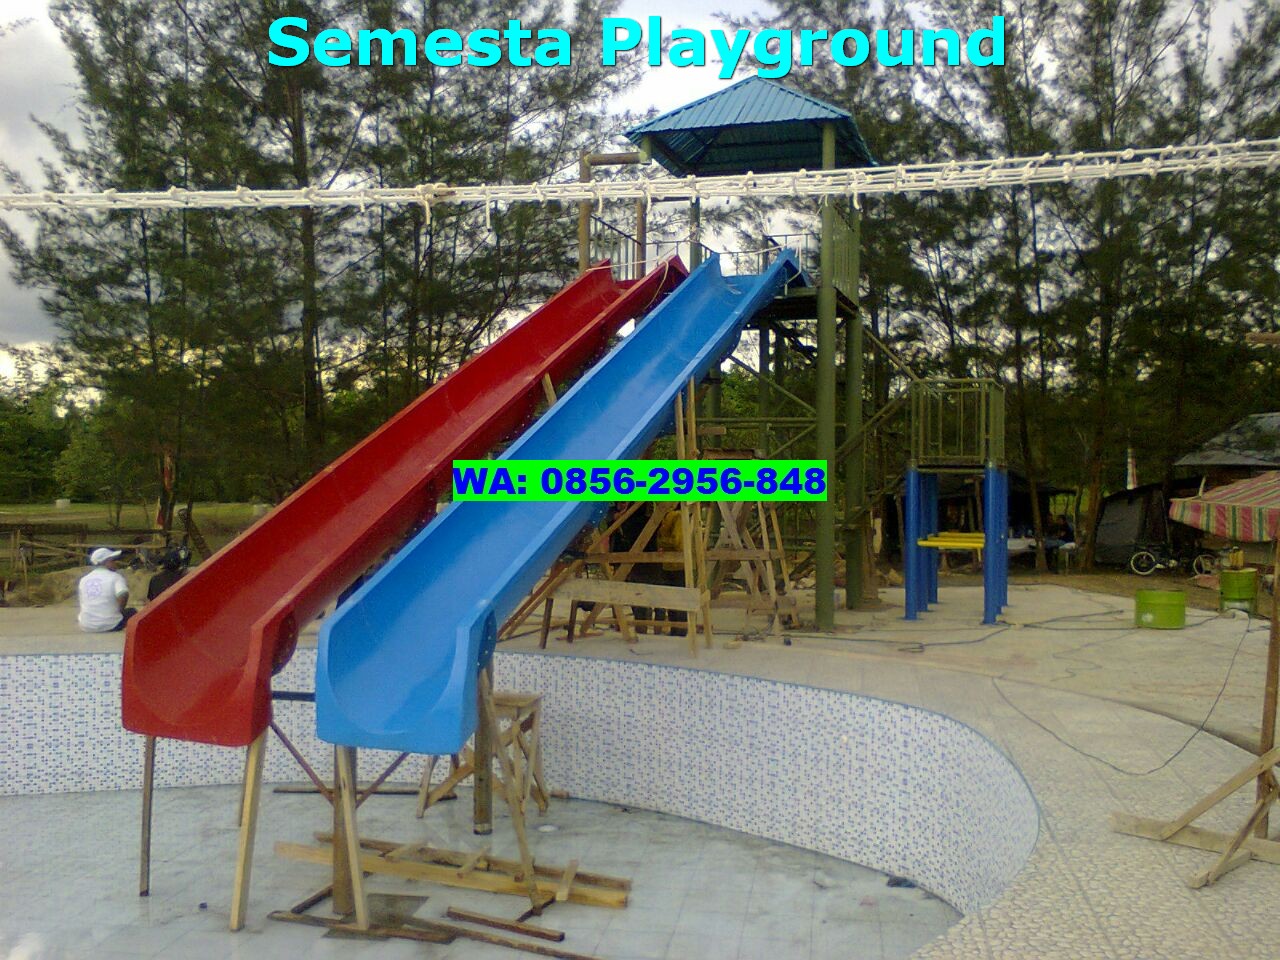 Harga Perosotan Fiber Kolam Renang di Semesta Playground, Dijamin Terjangkau!